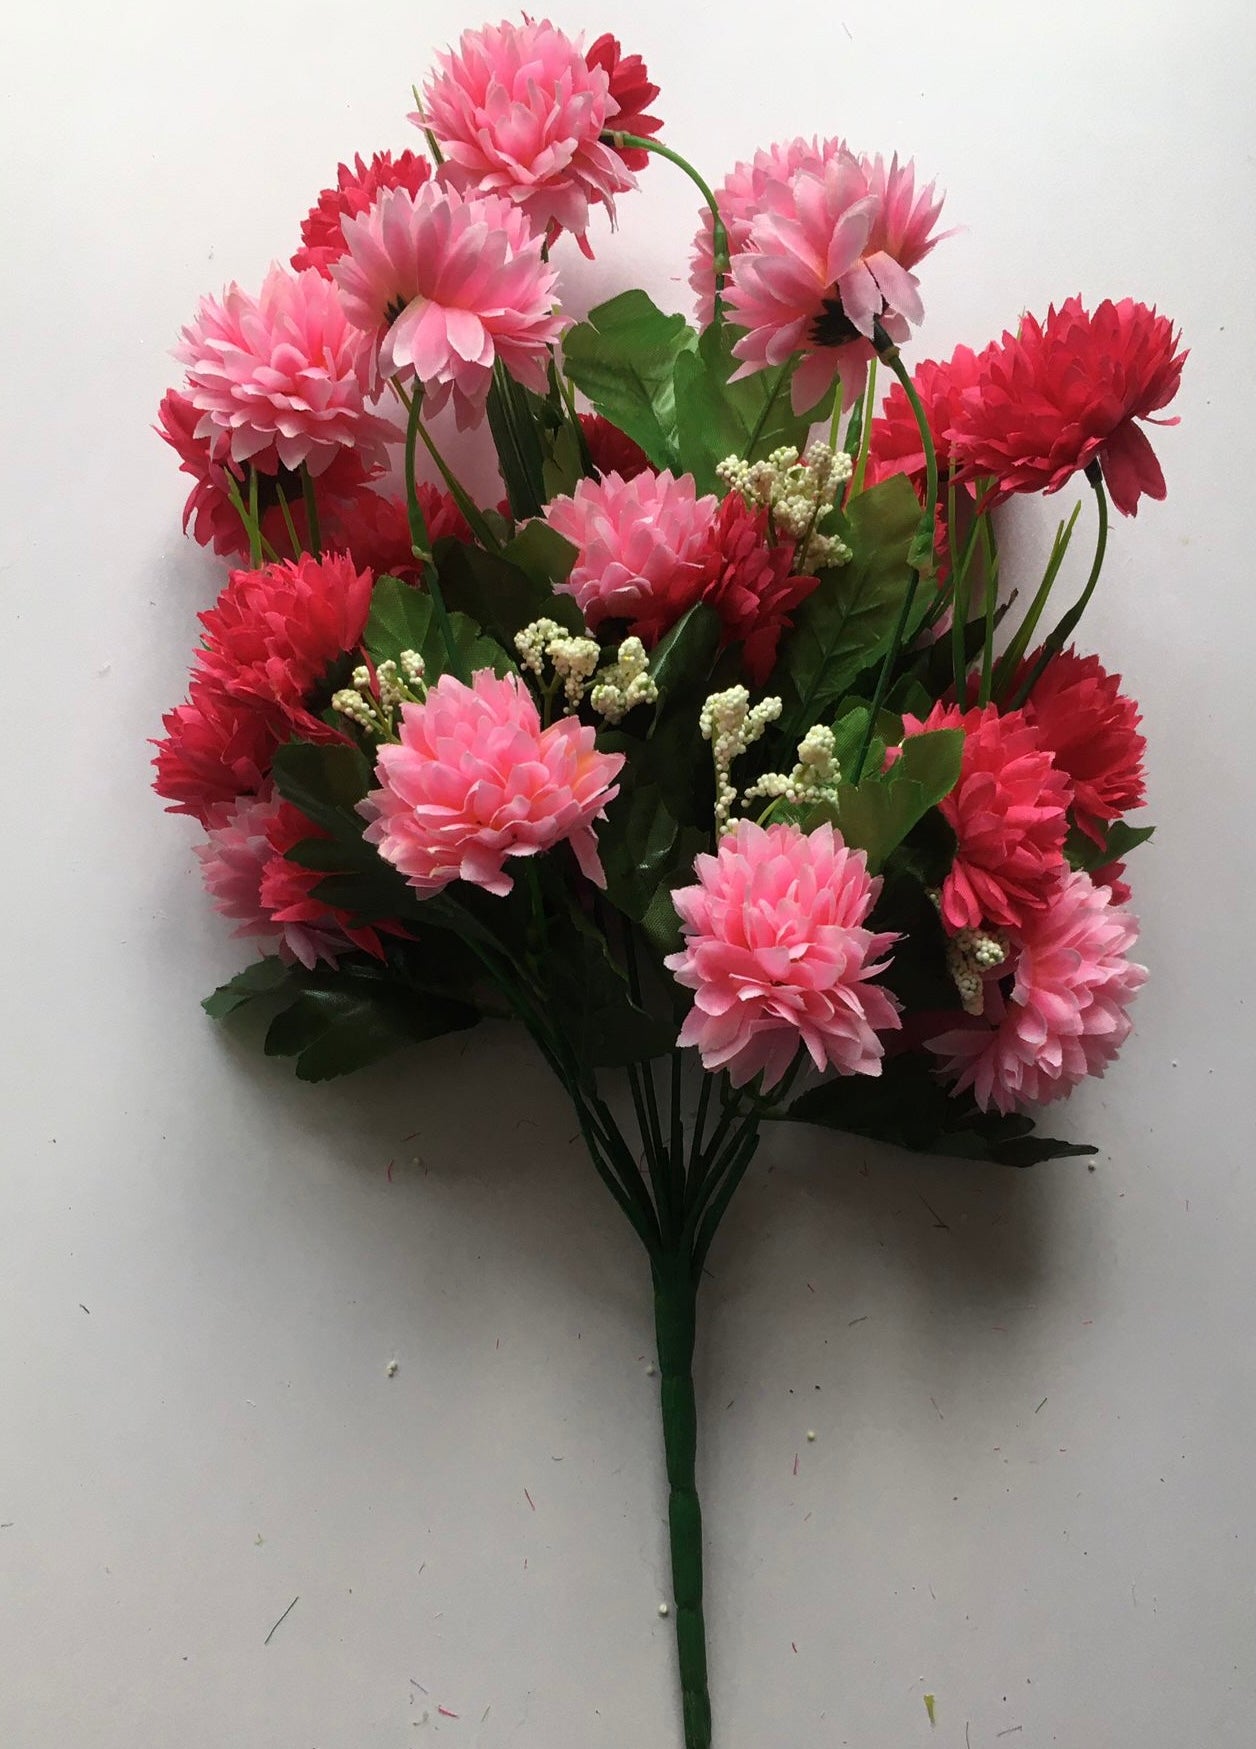 Mixed Pink Chrysanthemum Bush